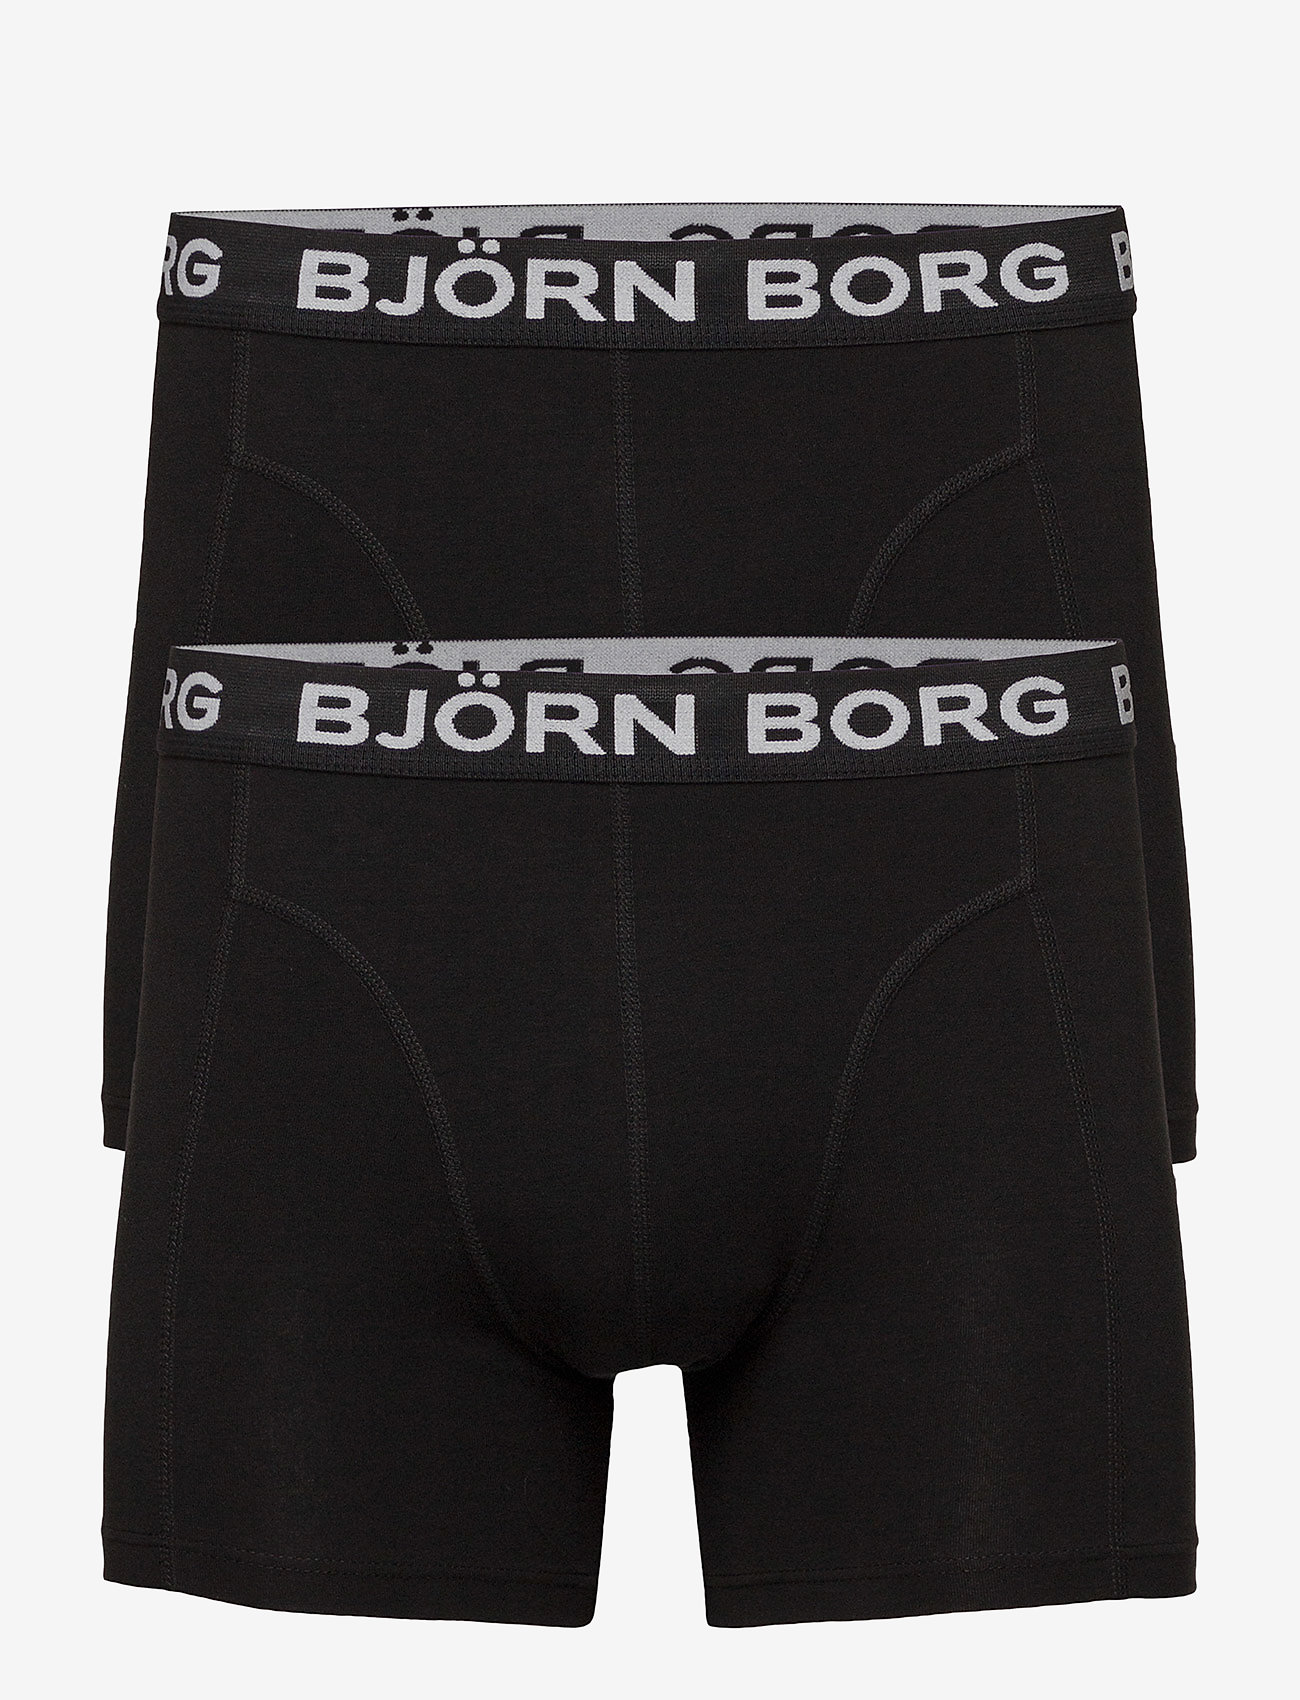 Borg Solids Sammy Shorts - Boxershorts | Boozt.com